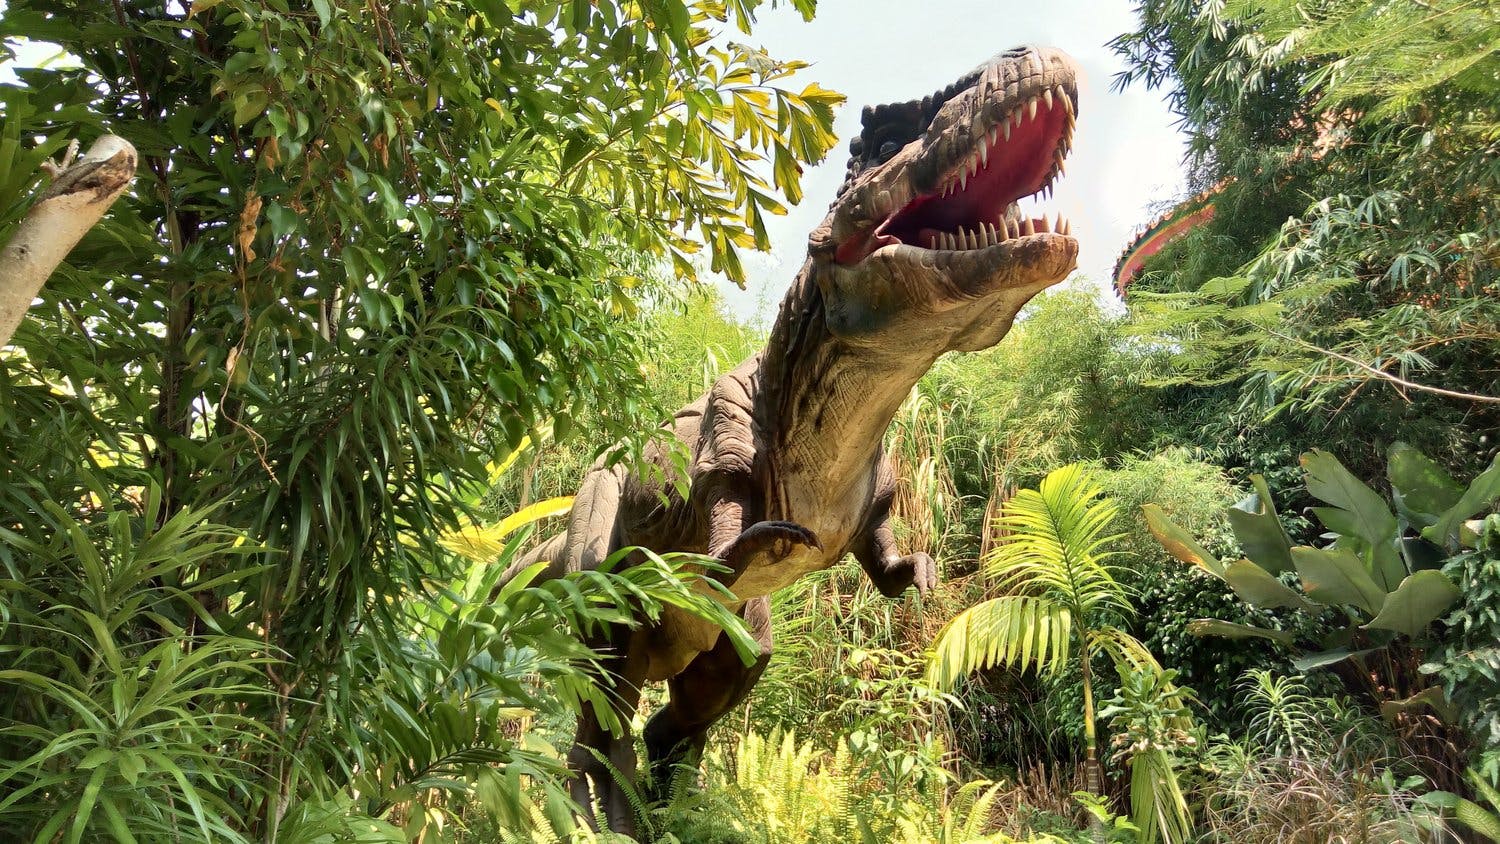 Jurassic Kingdom Perth Dinosaur Theme Park